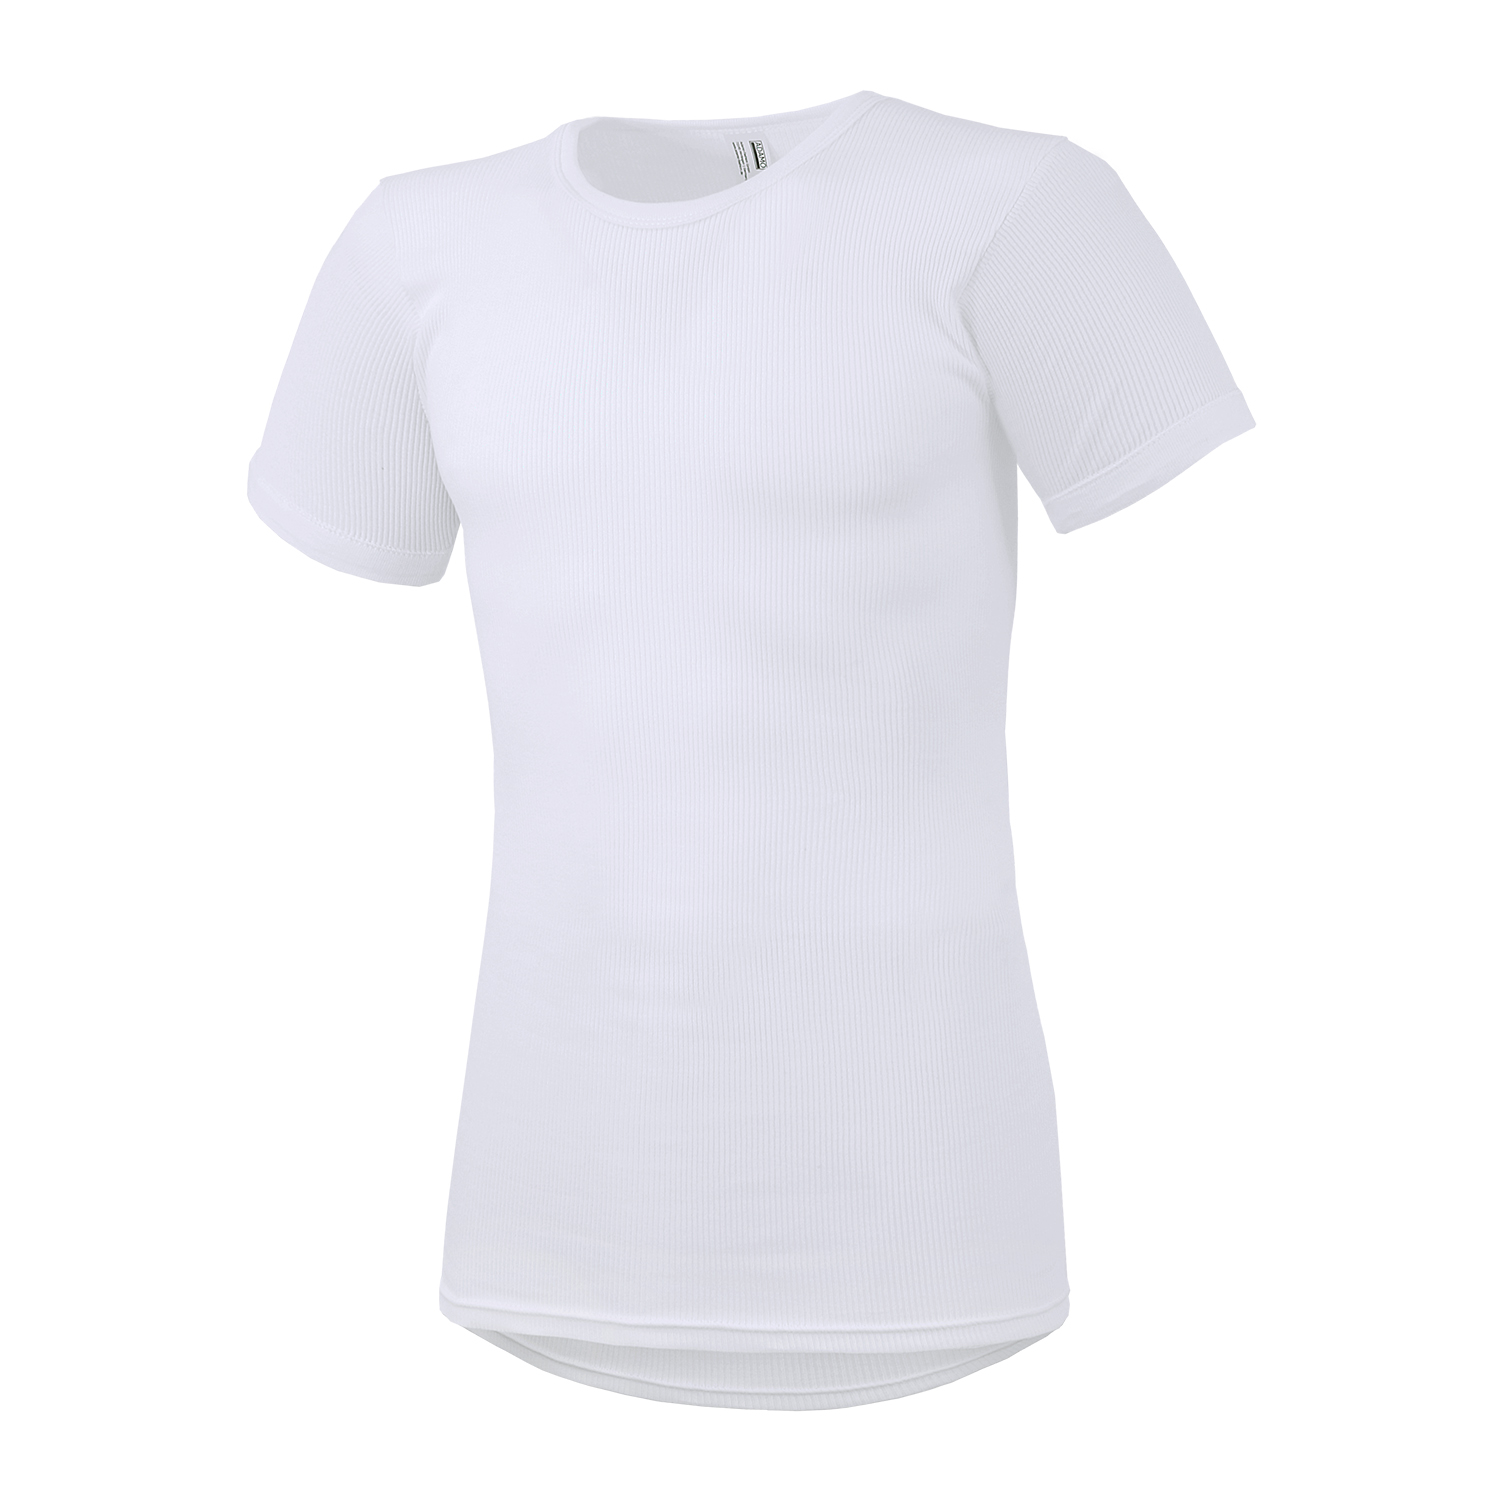 Doppelripp T-Shirt PRESTIGE mit 1/2 Arm von Adamo bis Übergröße 20